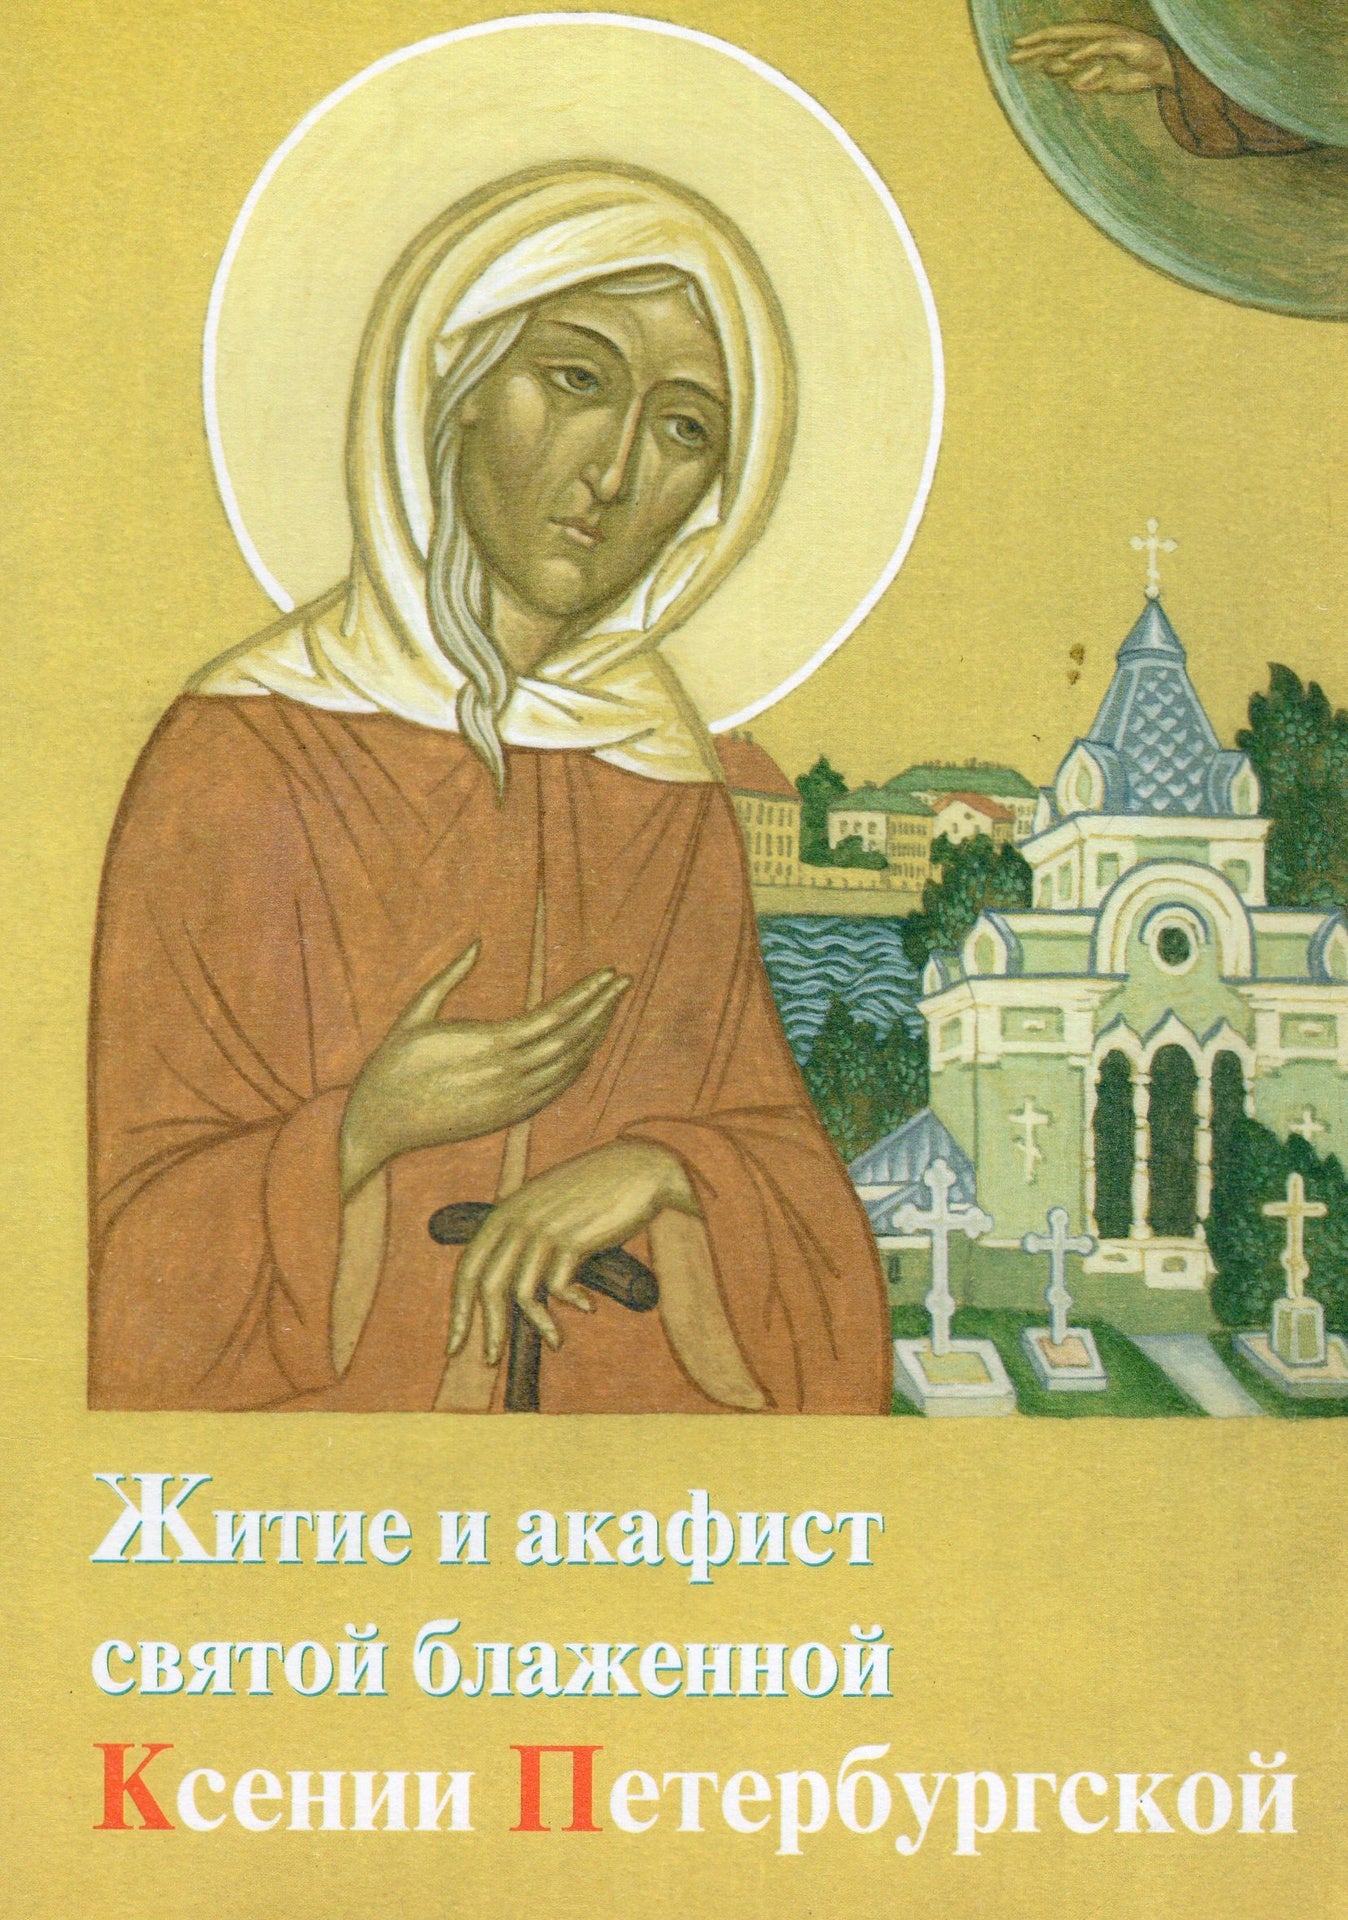 Житие и акафист святой блаженной Ксении Петербургской